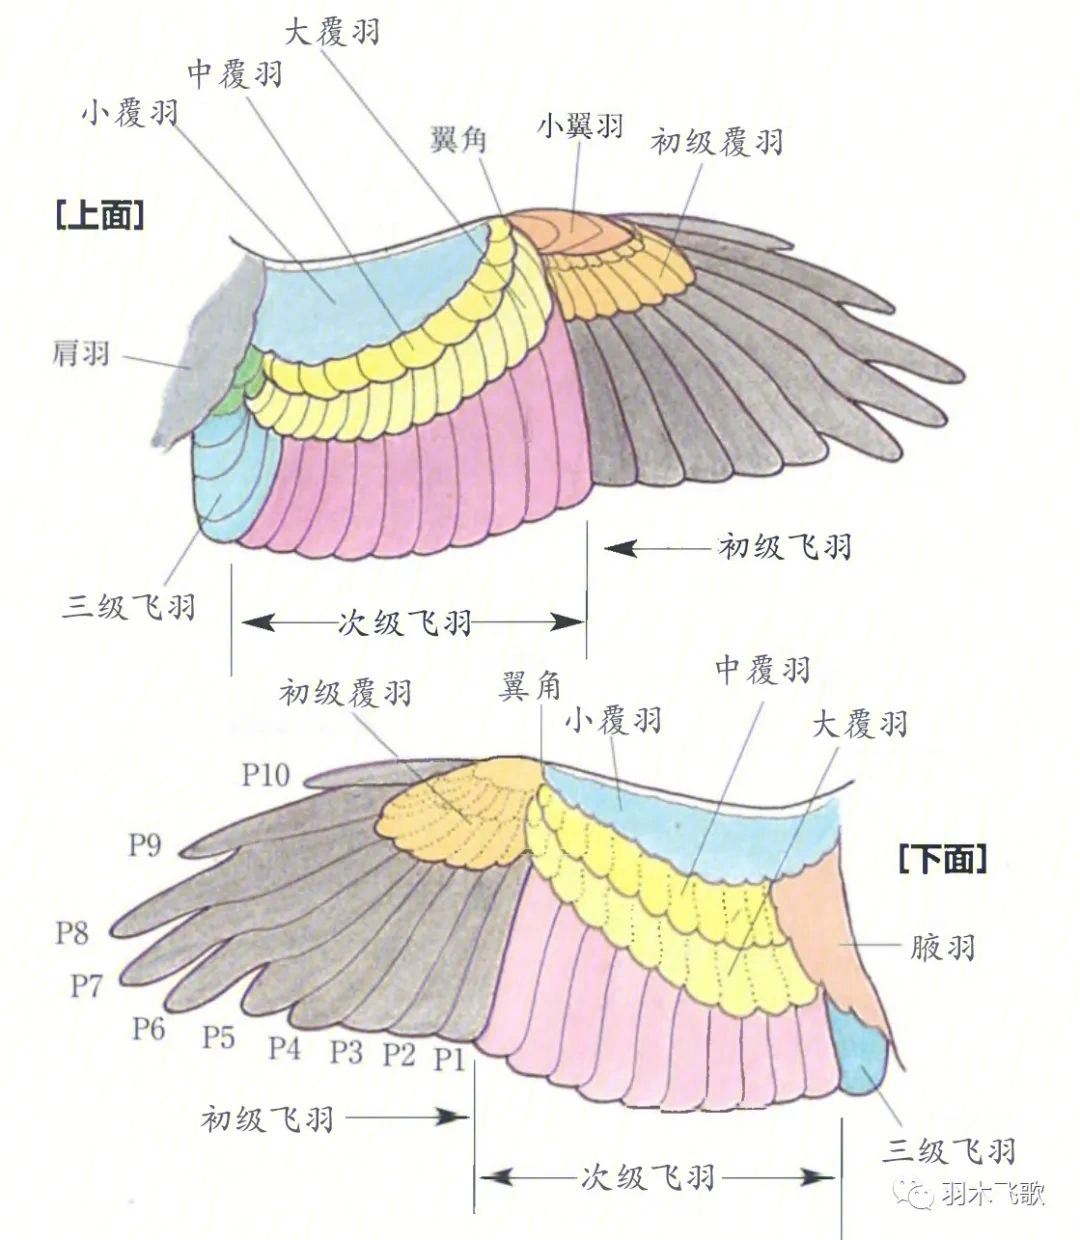 鸟的翅膀结构图片